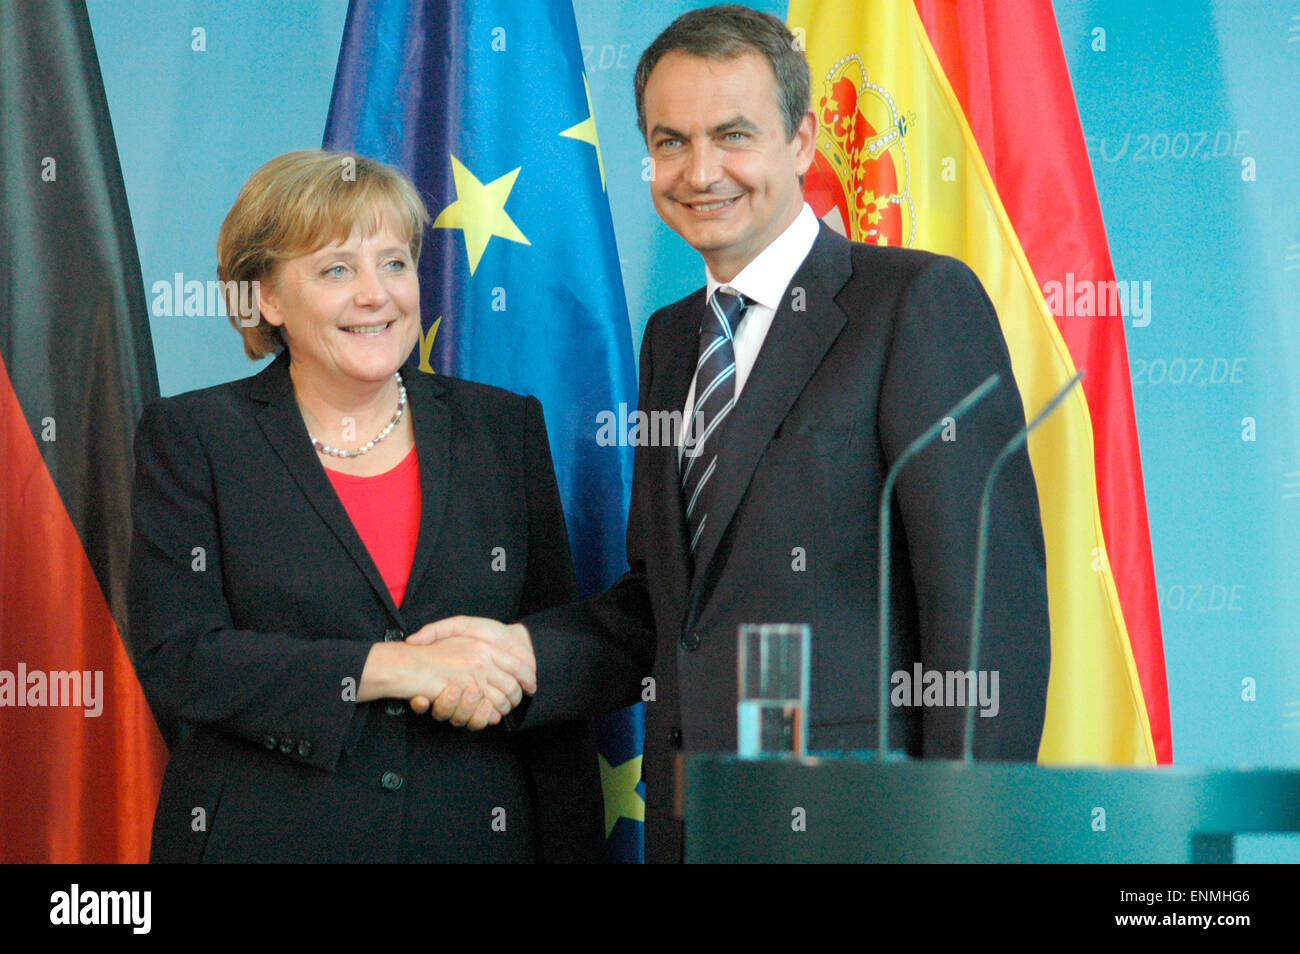 Angela Merkel, Jose Luis Rodriguez Zapatero - Treffen der dt. BKin Mit Dem Spanischen PM, Bundeskanzleramt, 15. Juni 2007, Berlin-Tiergarten. Stockfoto